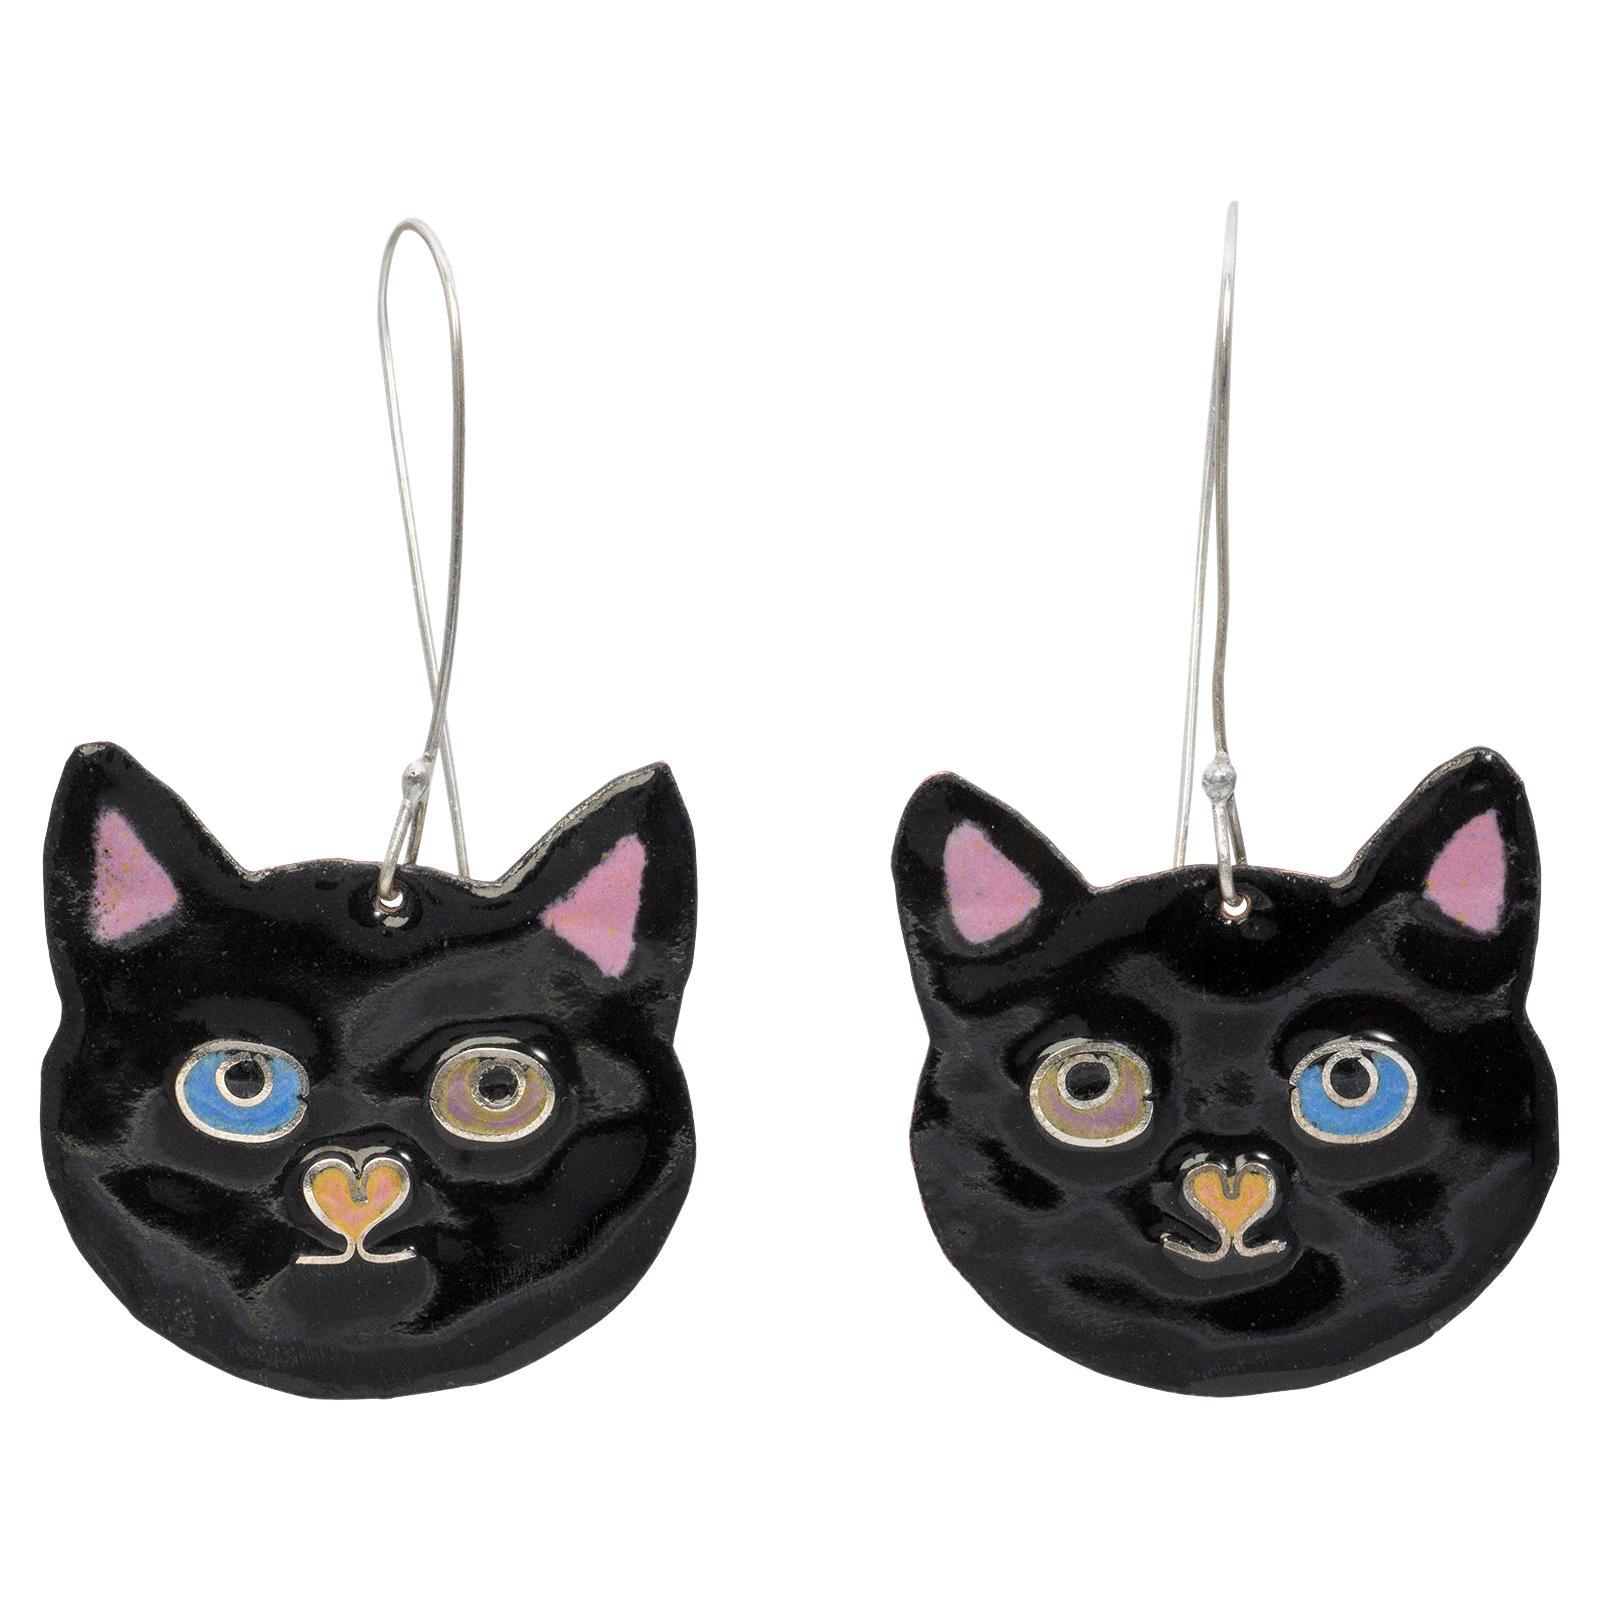 Black Kitty Kat Earrings. April in Paris Designs enamel hand painted earrings. For Sale